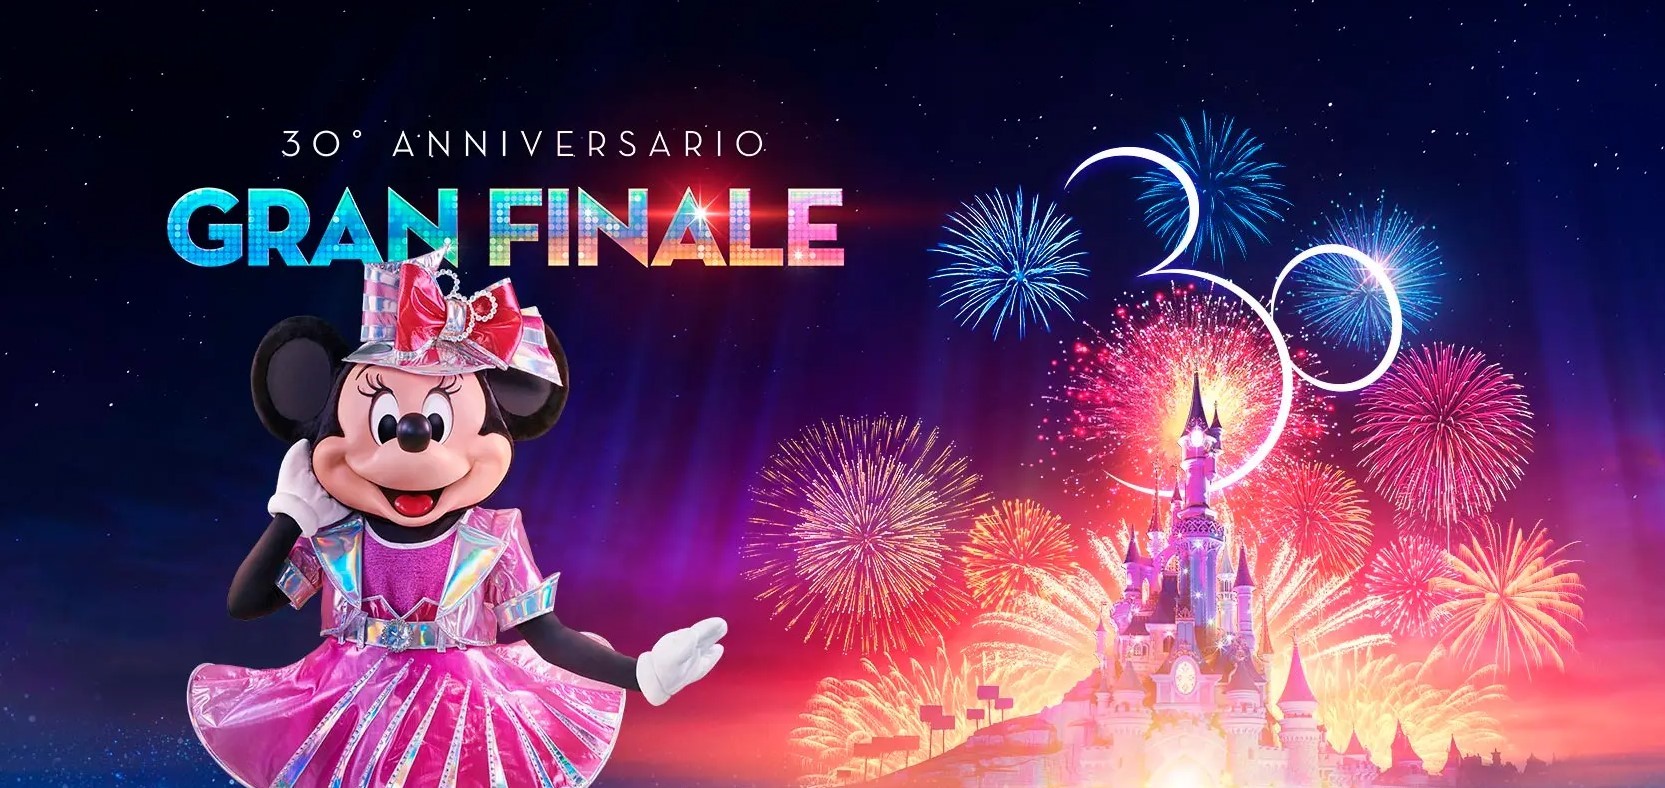 30 anni Disneyland Paris Gran Finale con Castello illuminato e Minnie